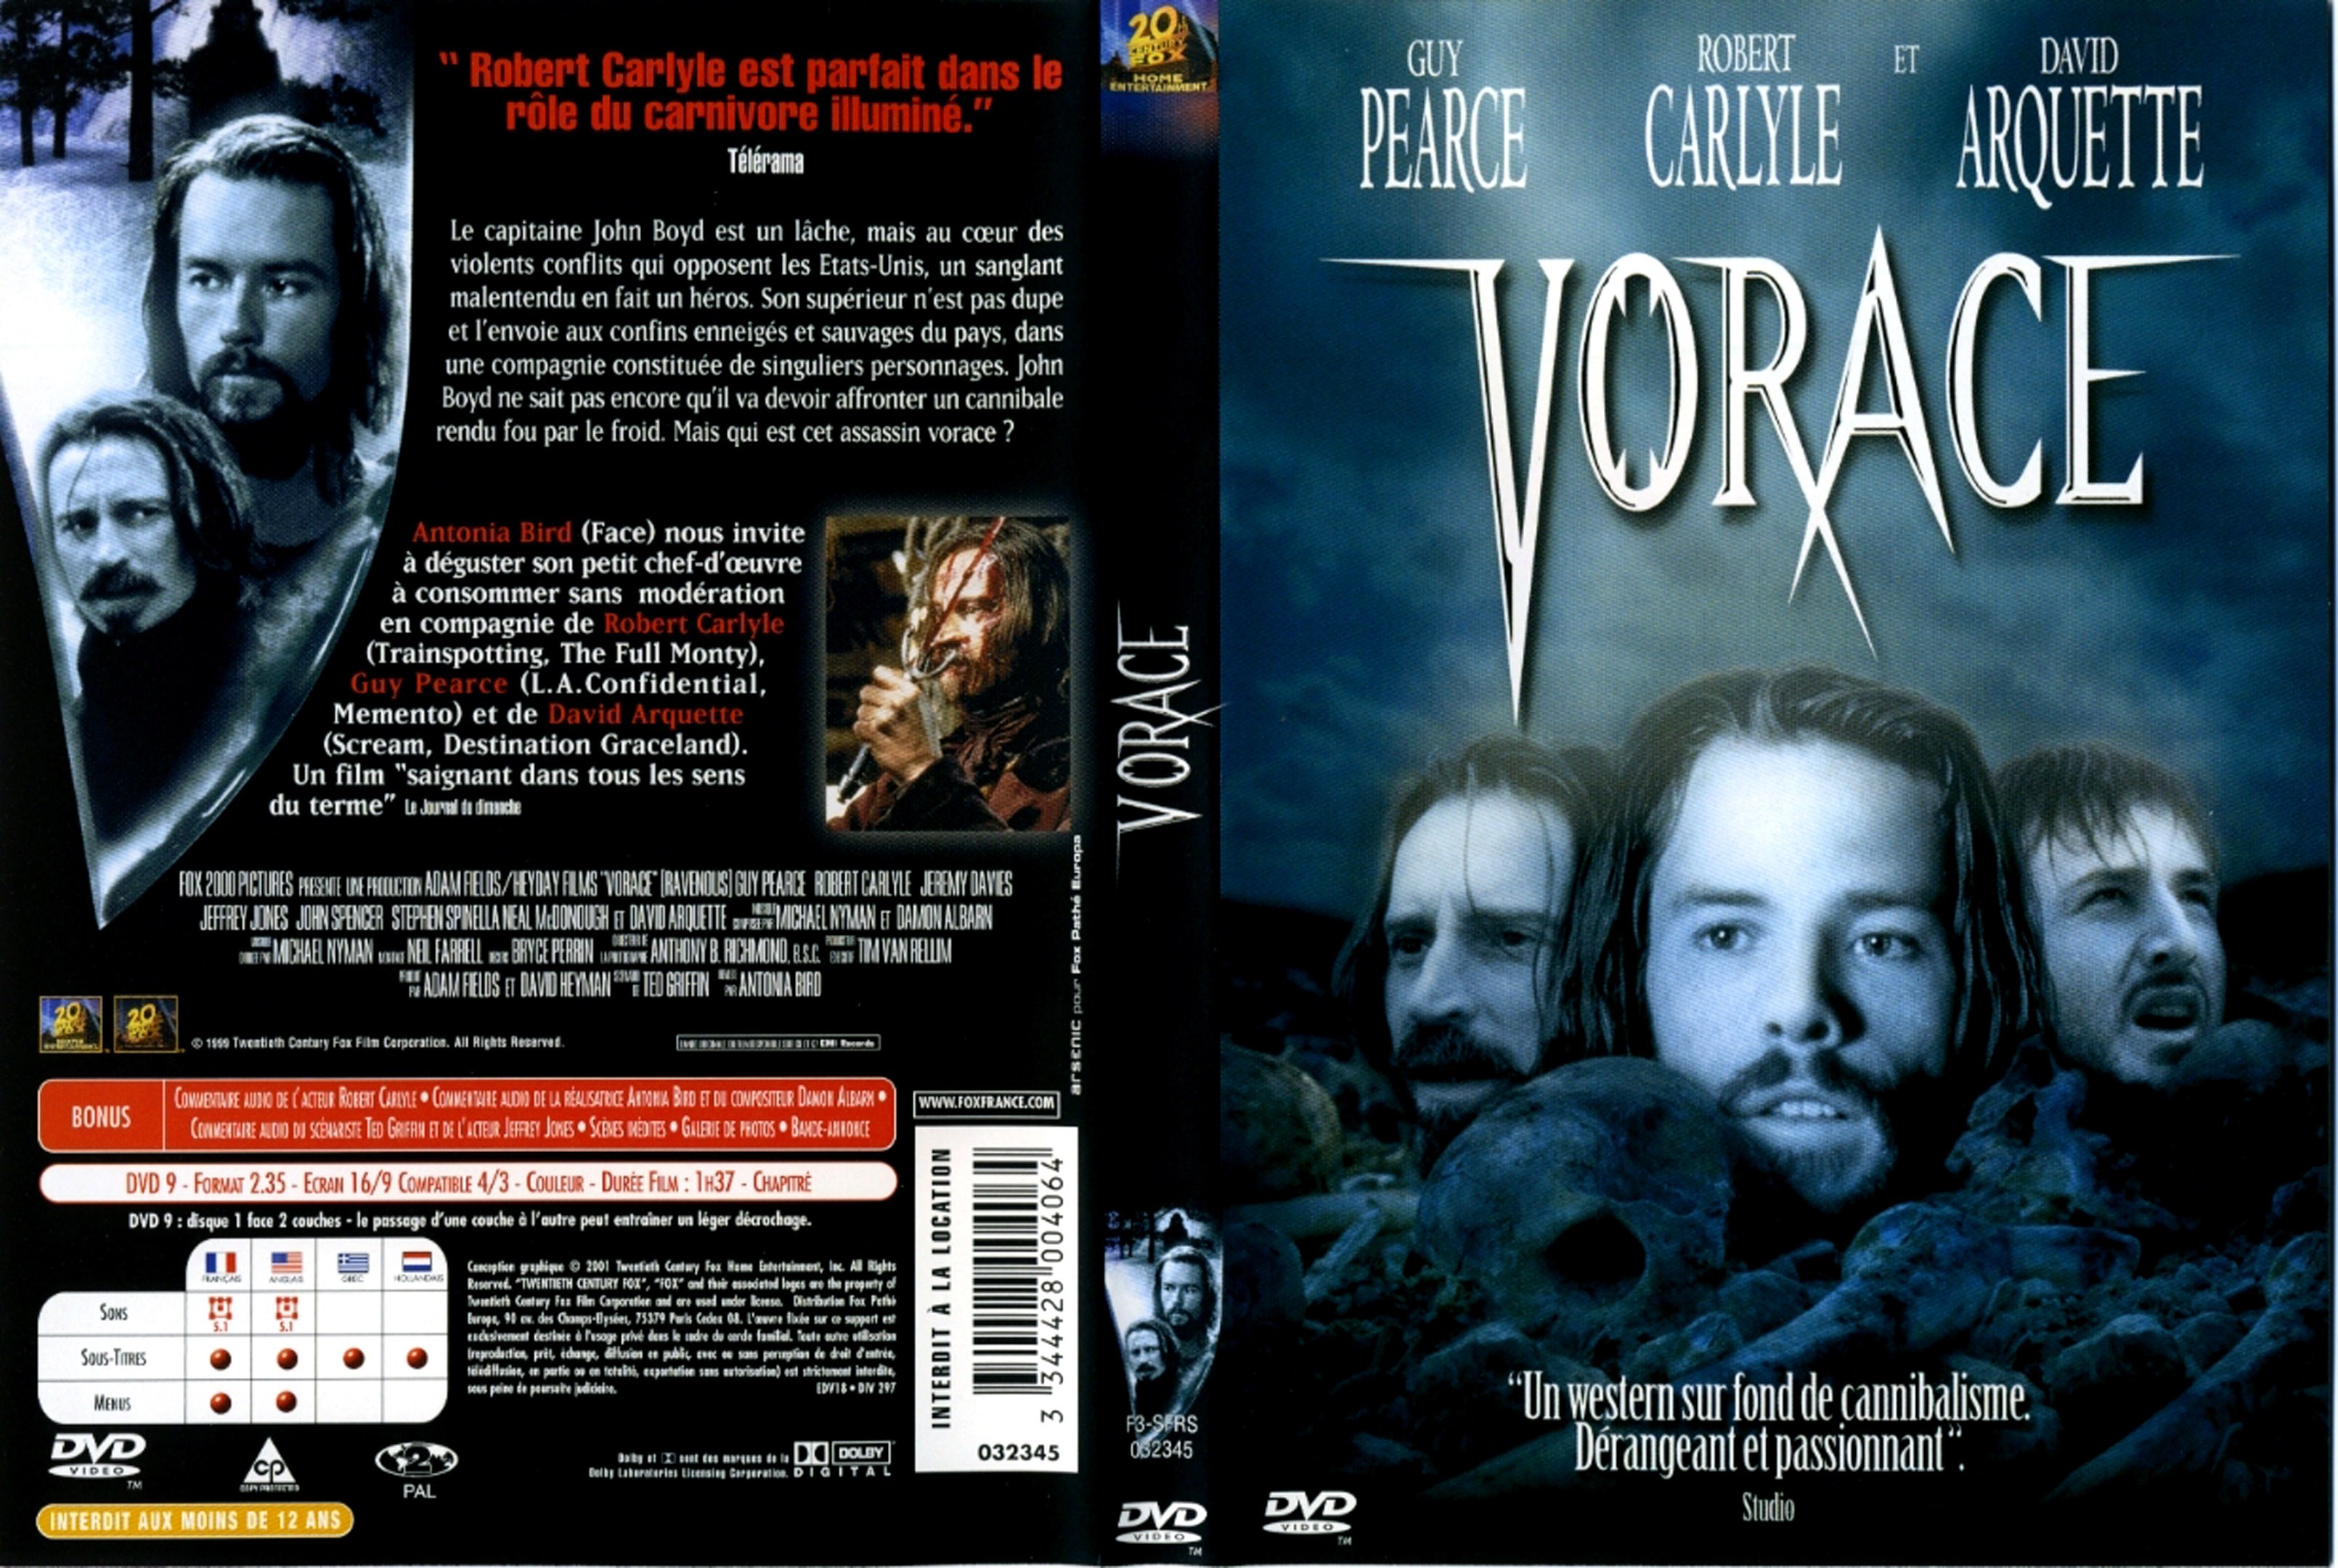 Jaquette DVD Vorace